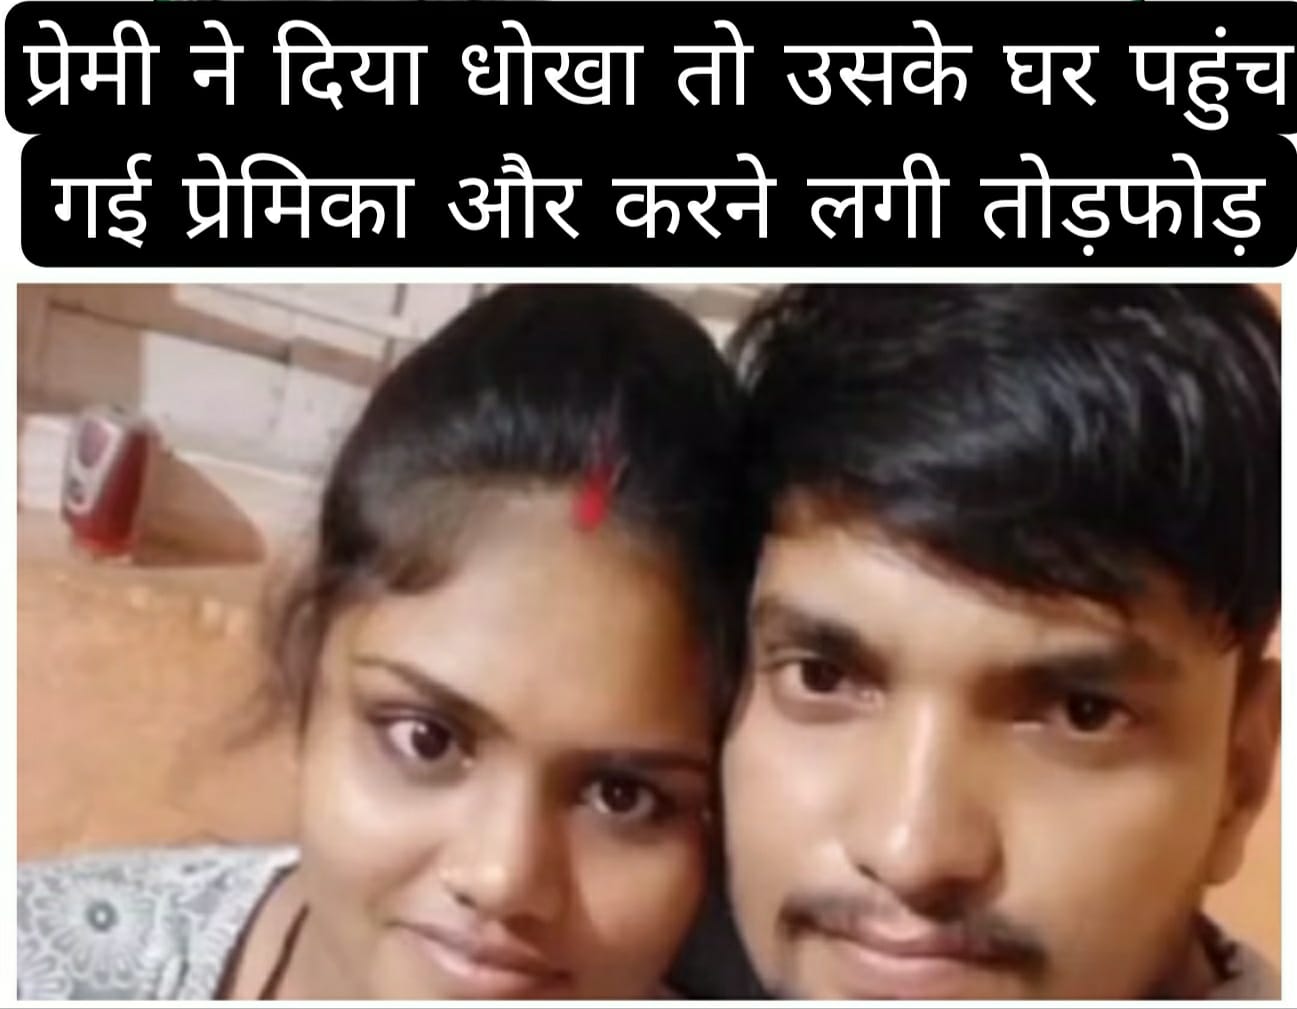 Dhanbad: प्रेमी ने दिया धोखा तो उसके घर पहुंच गई प्रेमिका और करने लगी तोड़फोड़ 